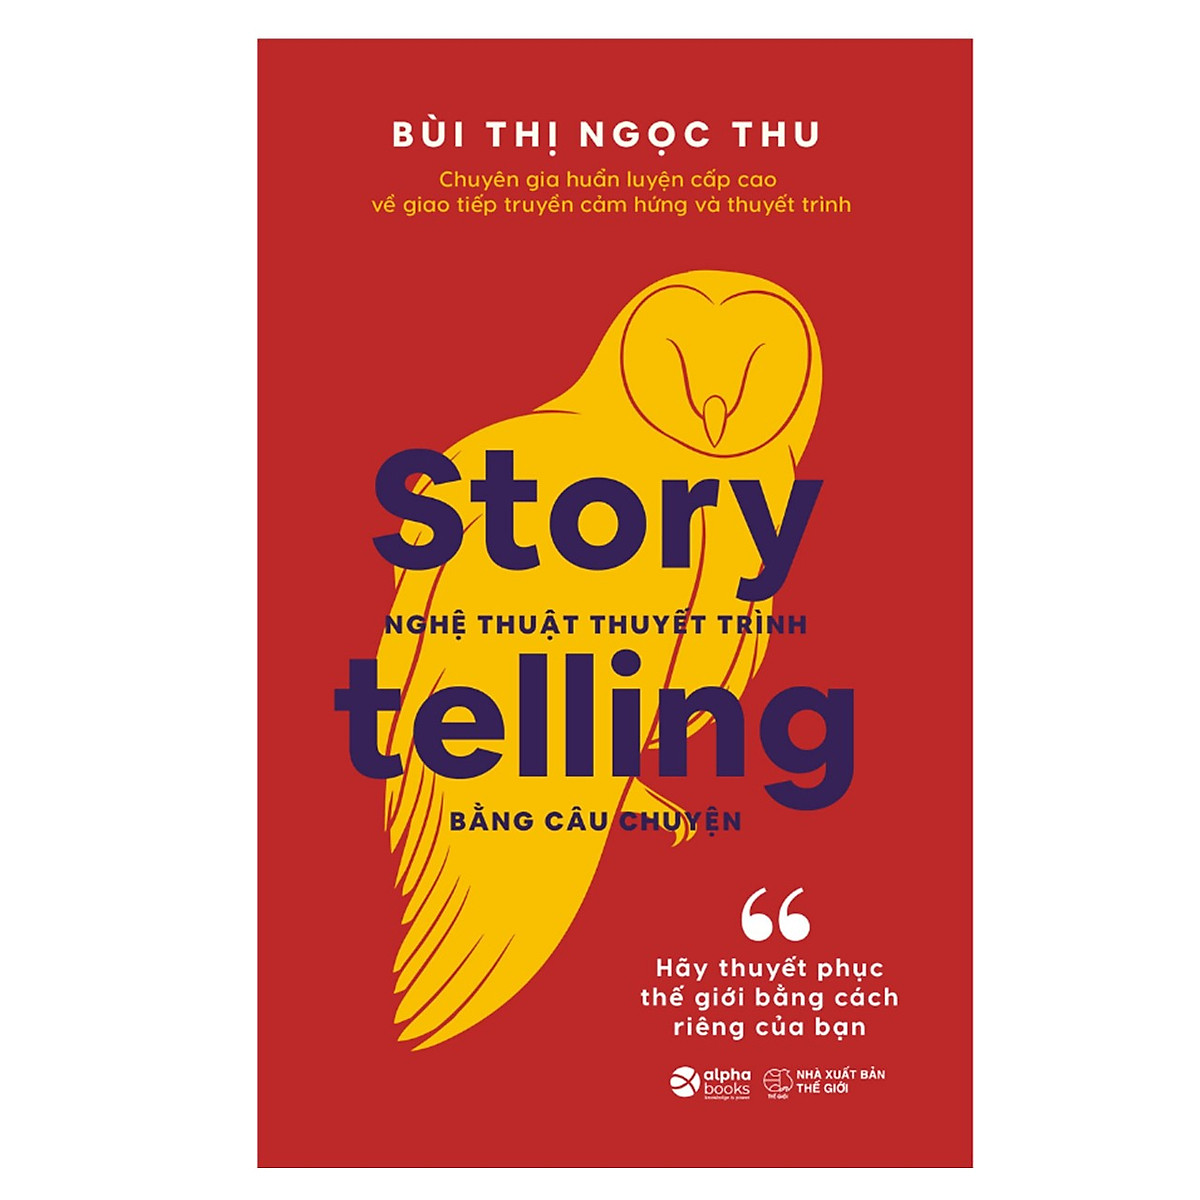 Combo Thuyết Phục Thế Giới: Storytelling – Nghệ Thuật Thuyết Trình Bằng Câu Chuyện + Marketing Du Kích Trong 30 Ngày